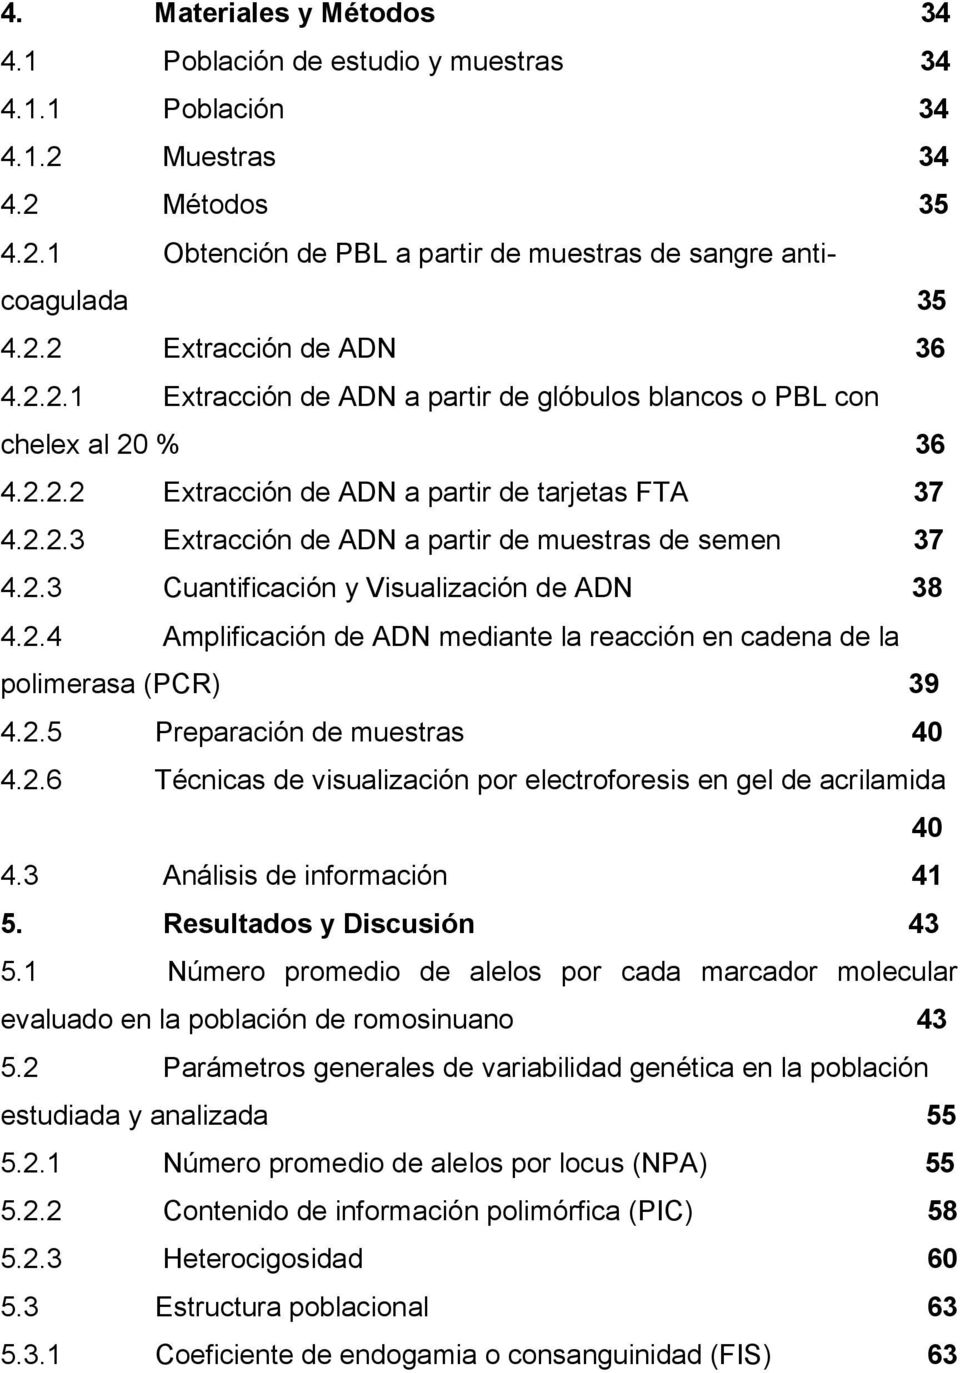 2.4 Amplificación de ADN mediante la reacción en cadena de la polimerasa (PCR) 39 4.2.5 Preparación de muestras 40 4.2.6 Técnicas de visualización por electroforesis en gel de acrilamida 40 4.